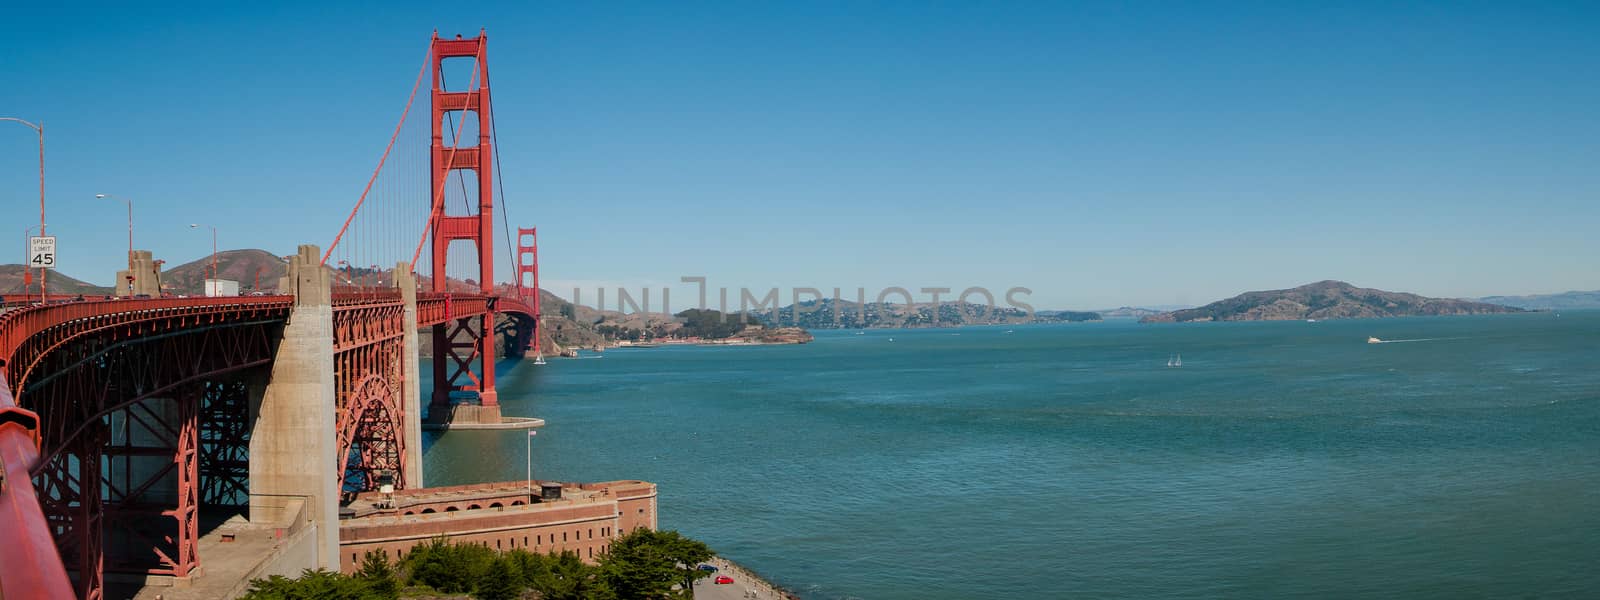 Golden Gate Bridge by weltreisendertj